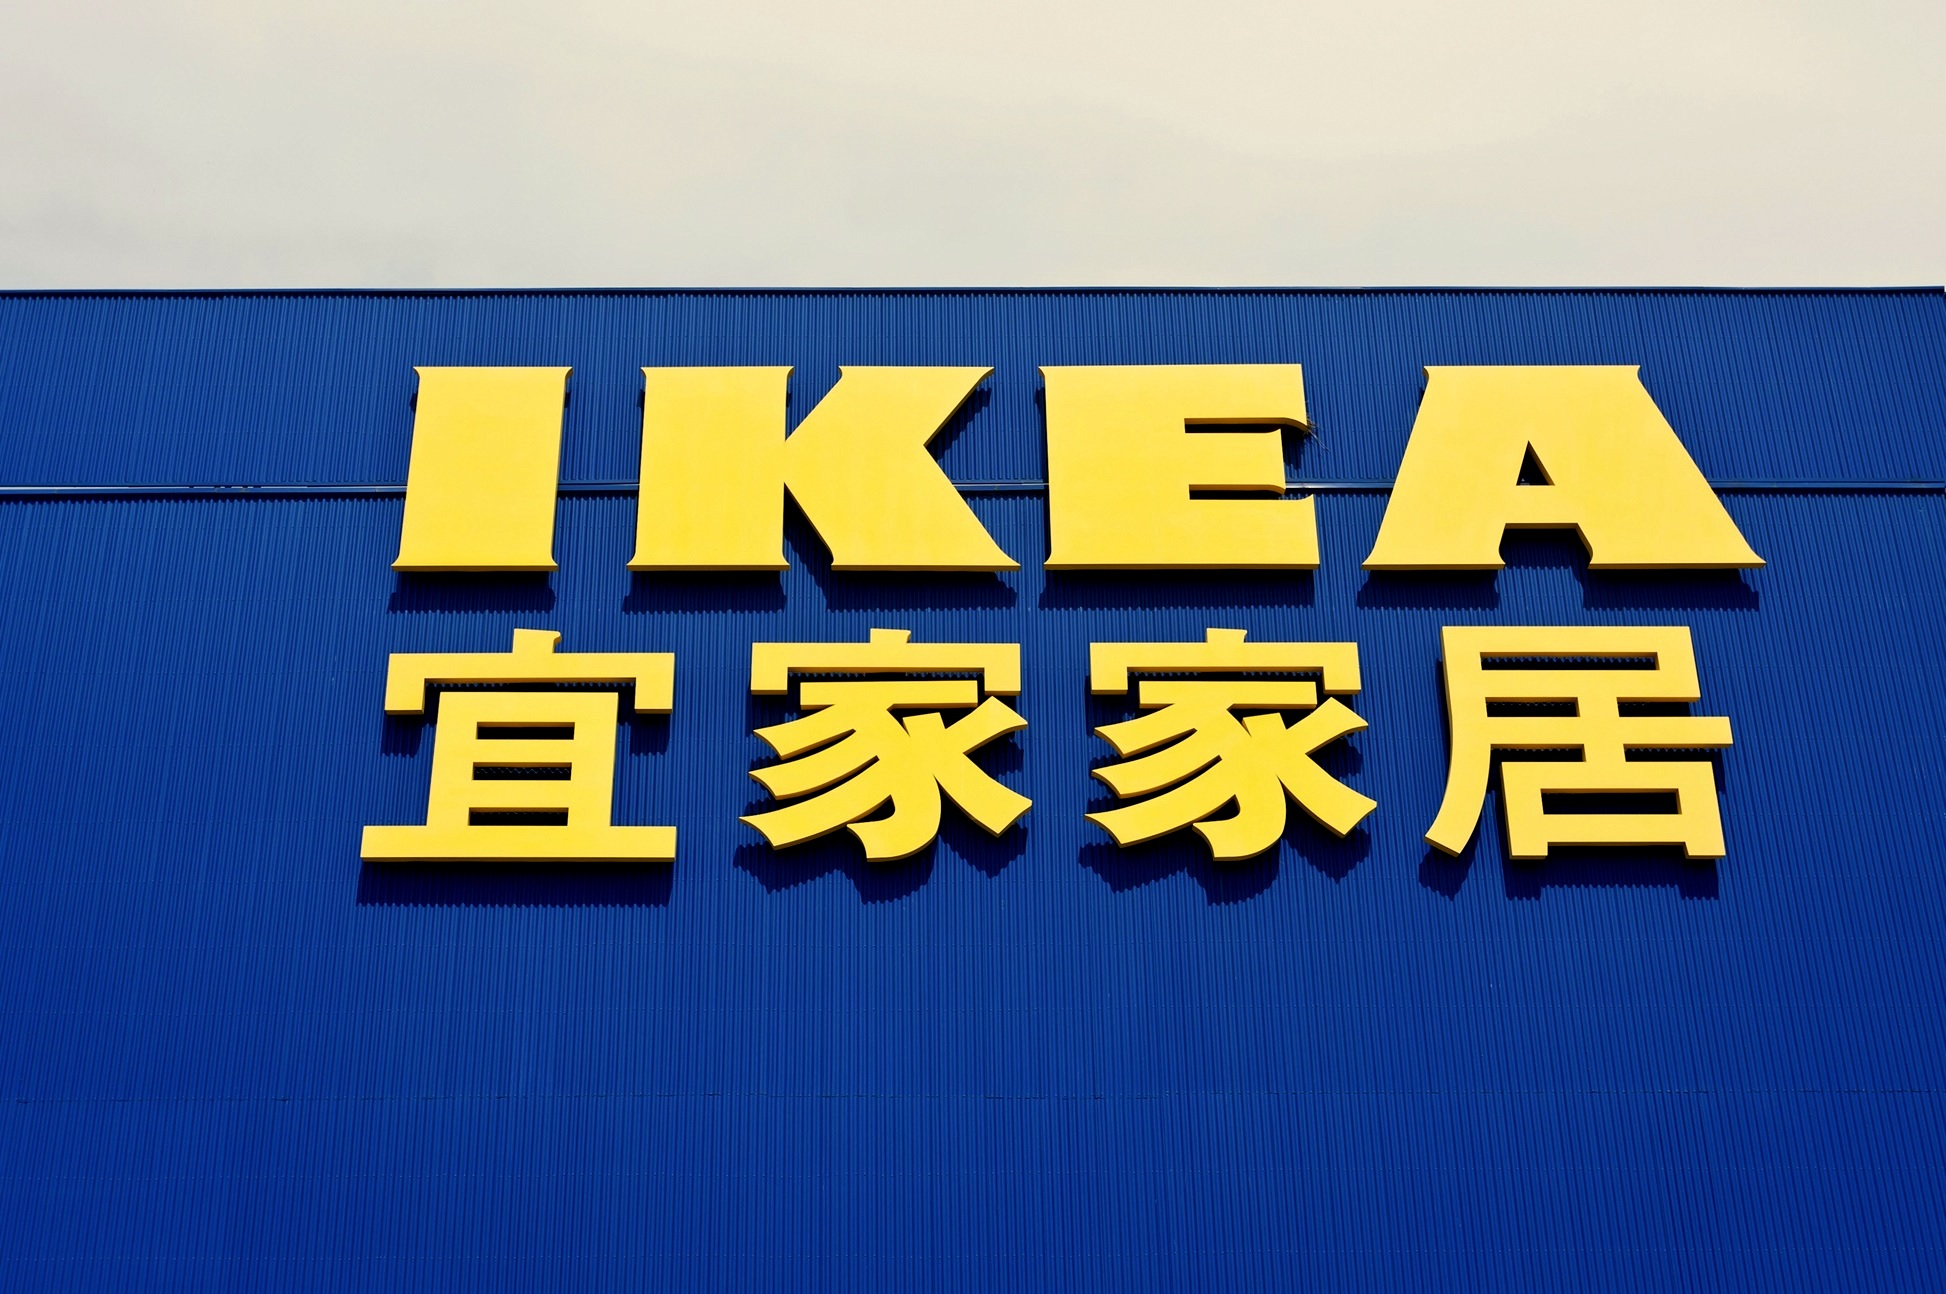 IKEA сняла для Китая рекламу про «женщин-неликвид», и компании пришлось извиняться